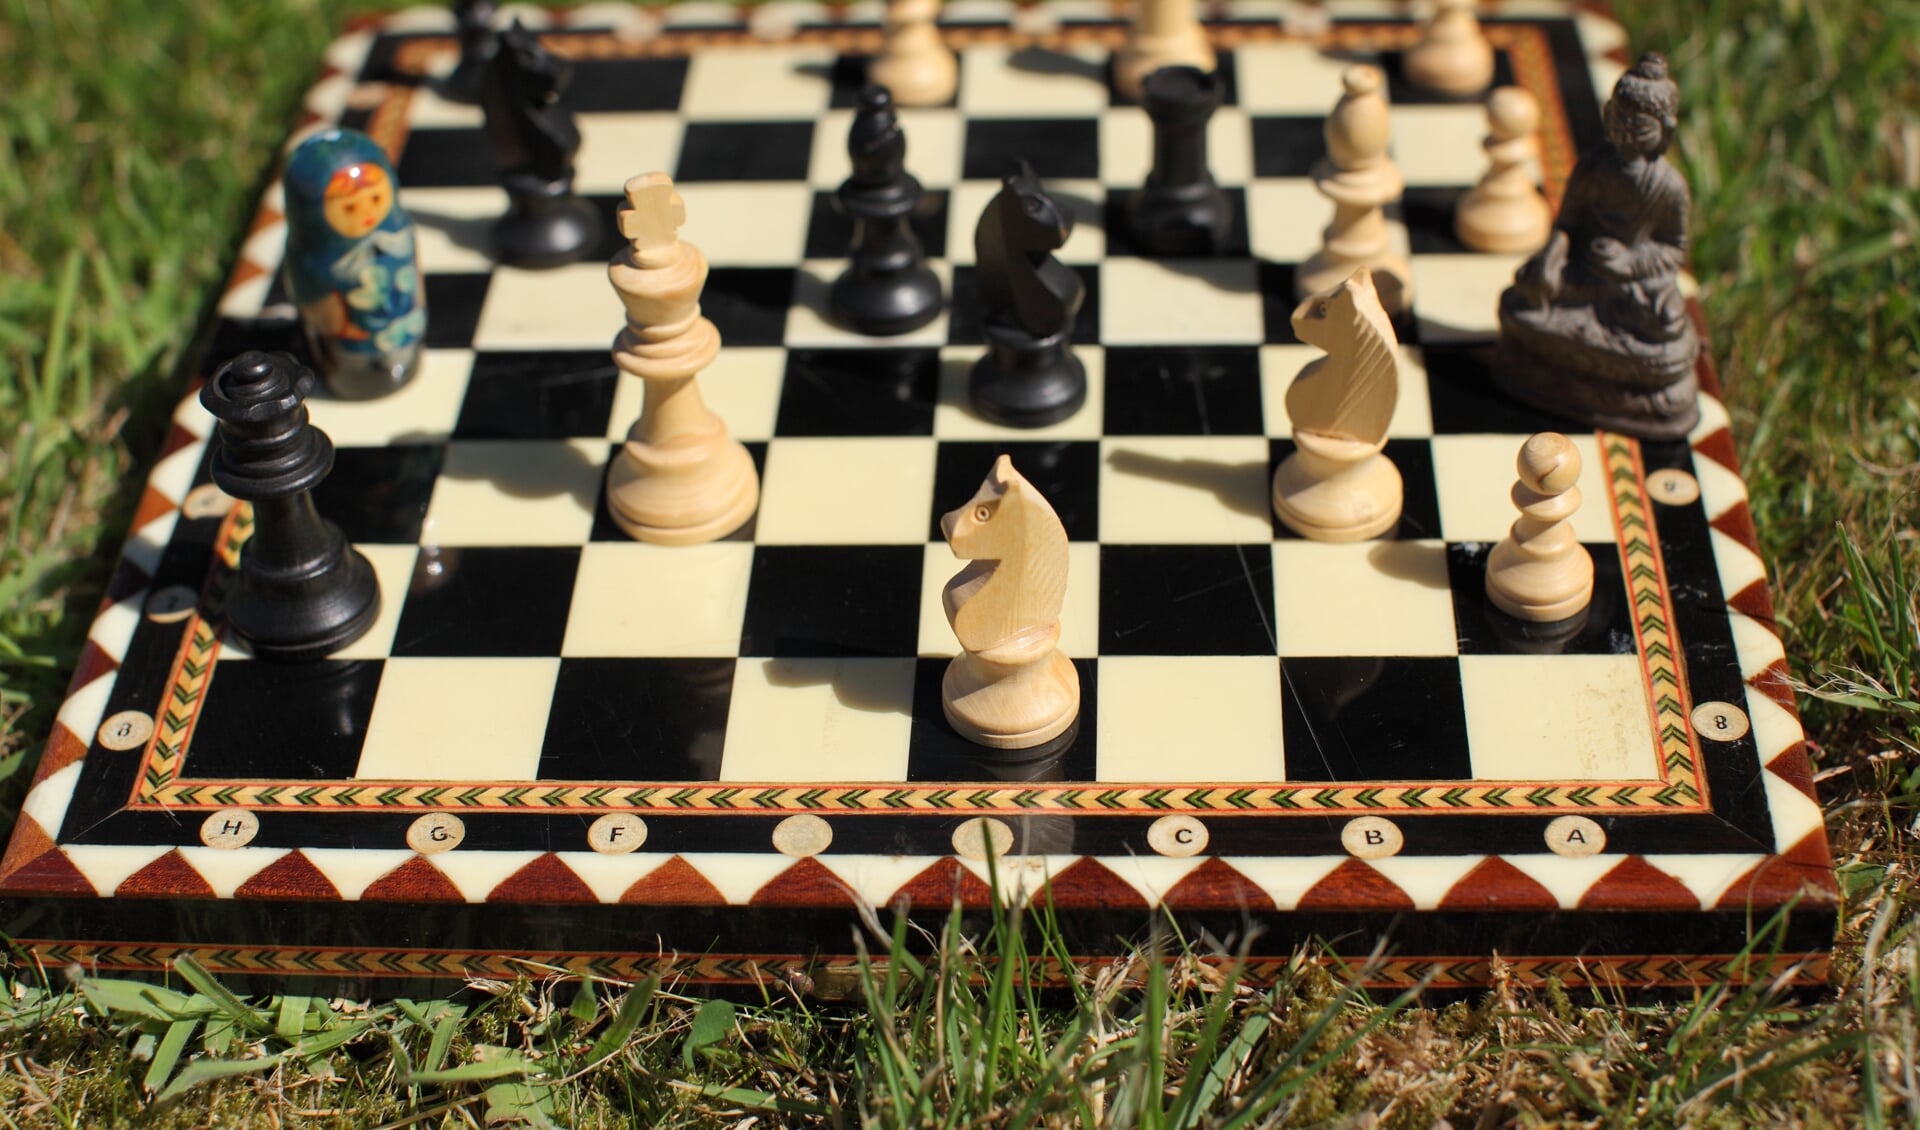 Hoe wordt het schaakspel gespeeld?